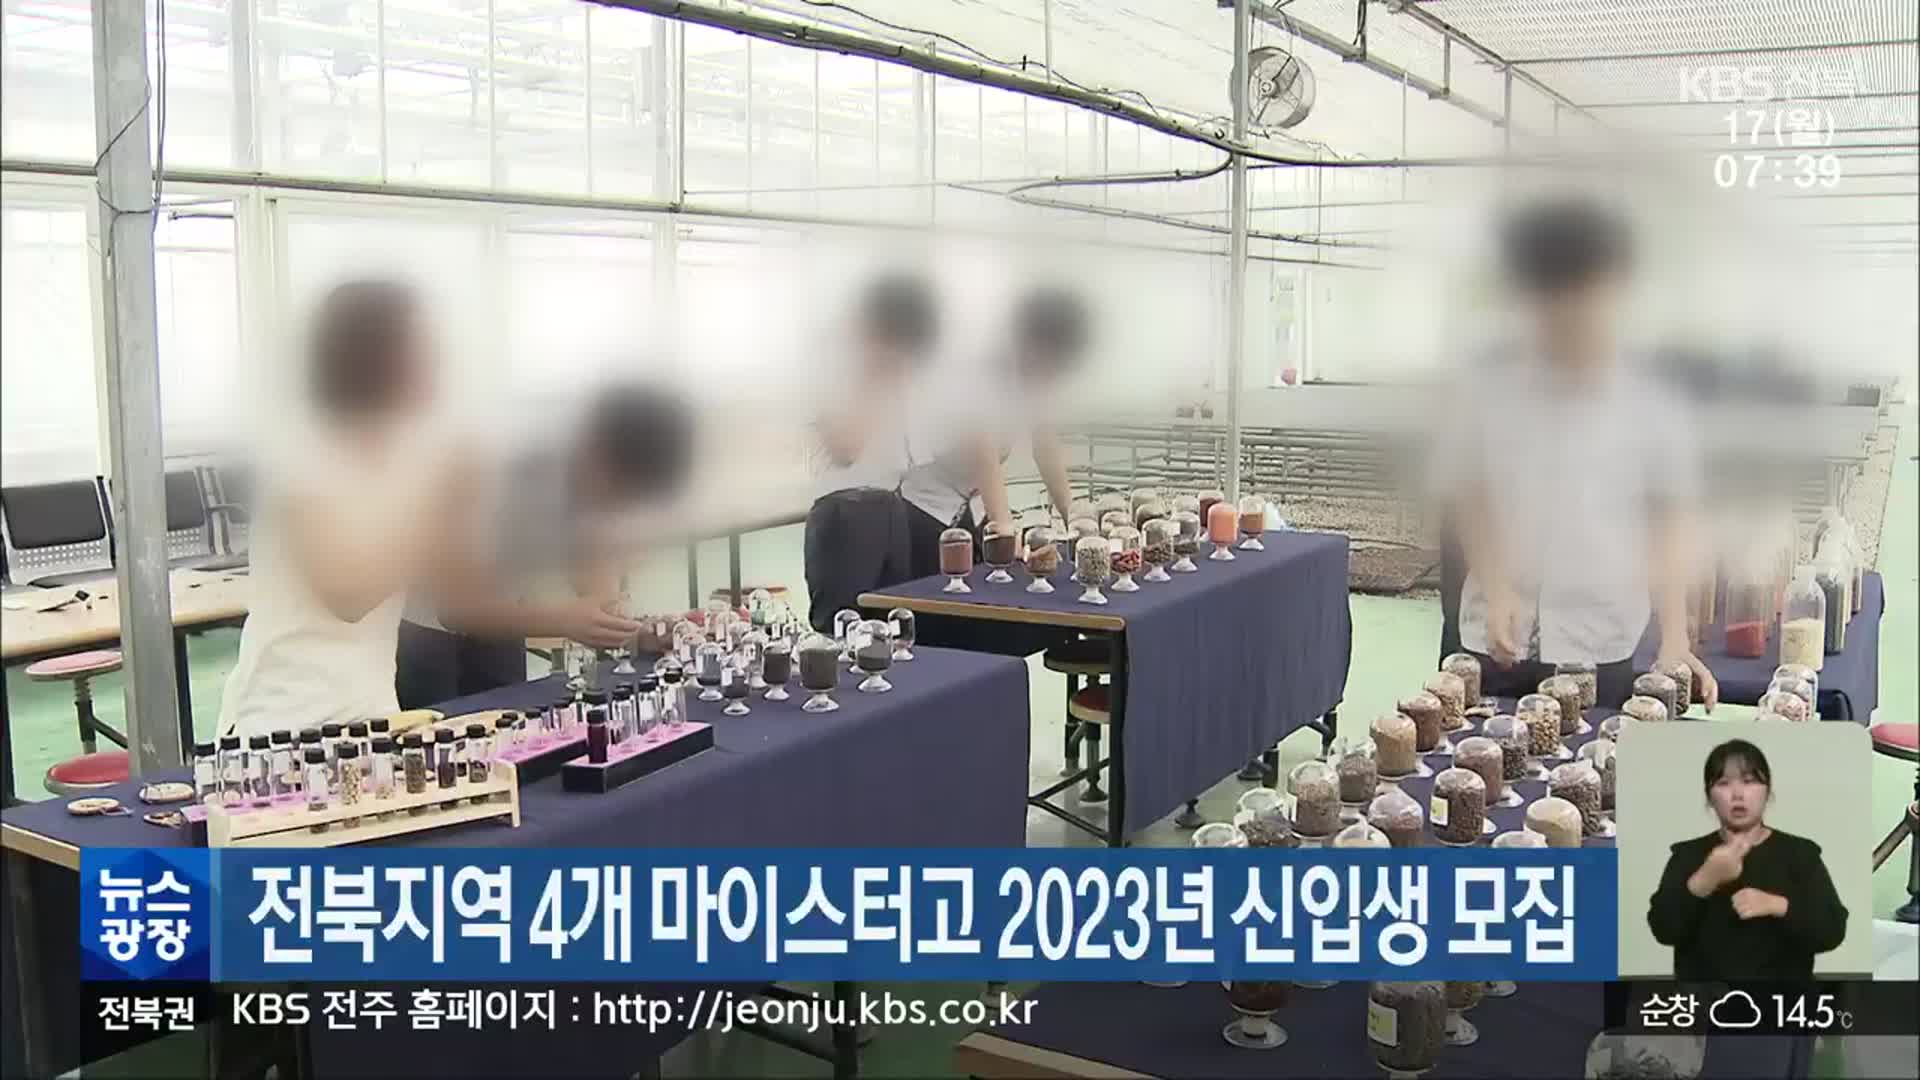 전북지역 4개 마이스터고 2023년 신입생 모집